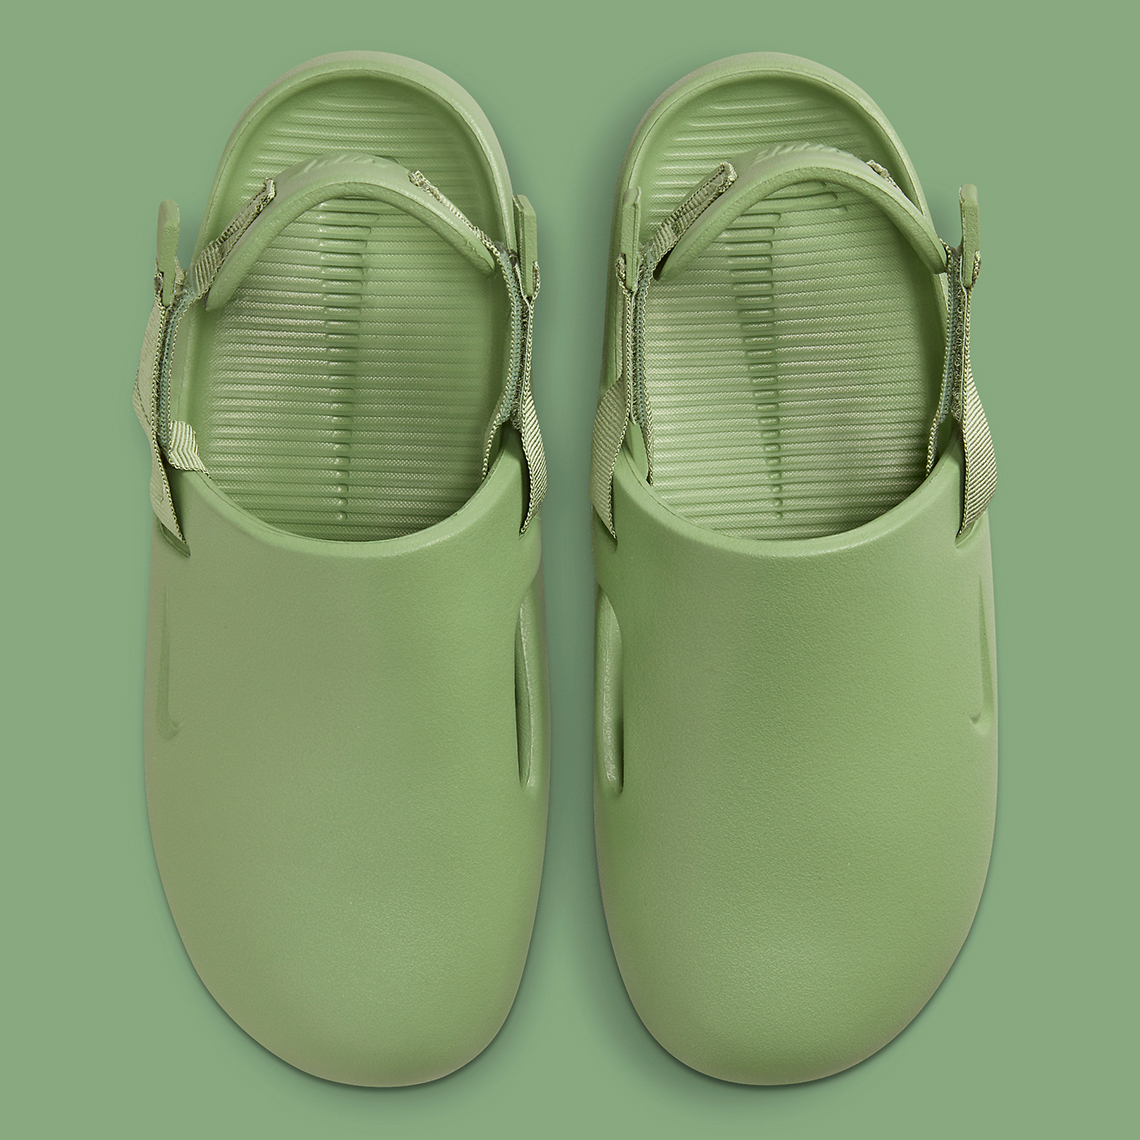 Nike Air Huarache Light Bone Poison Green Clog Green Fb2185 300 7